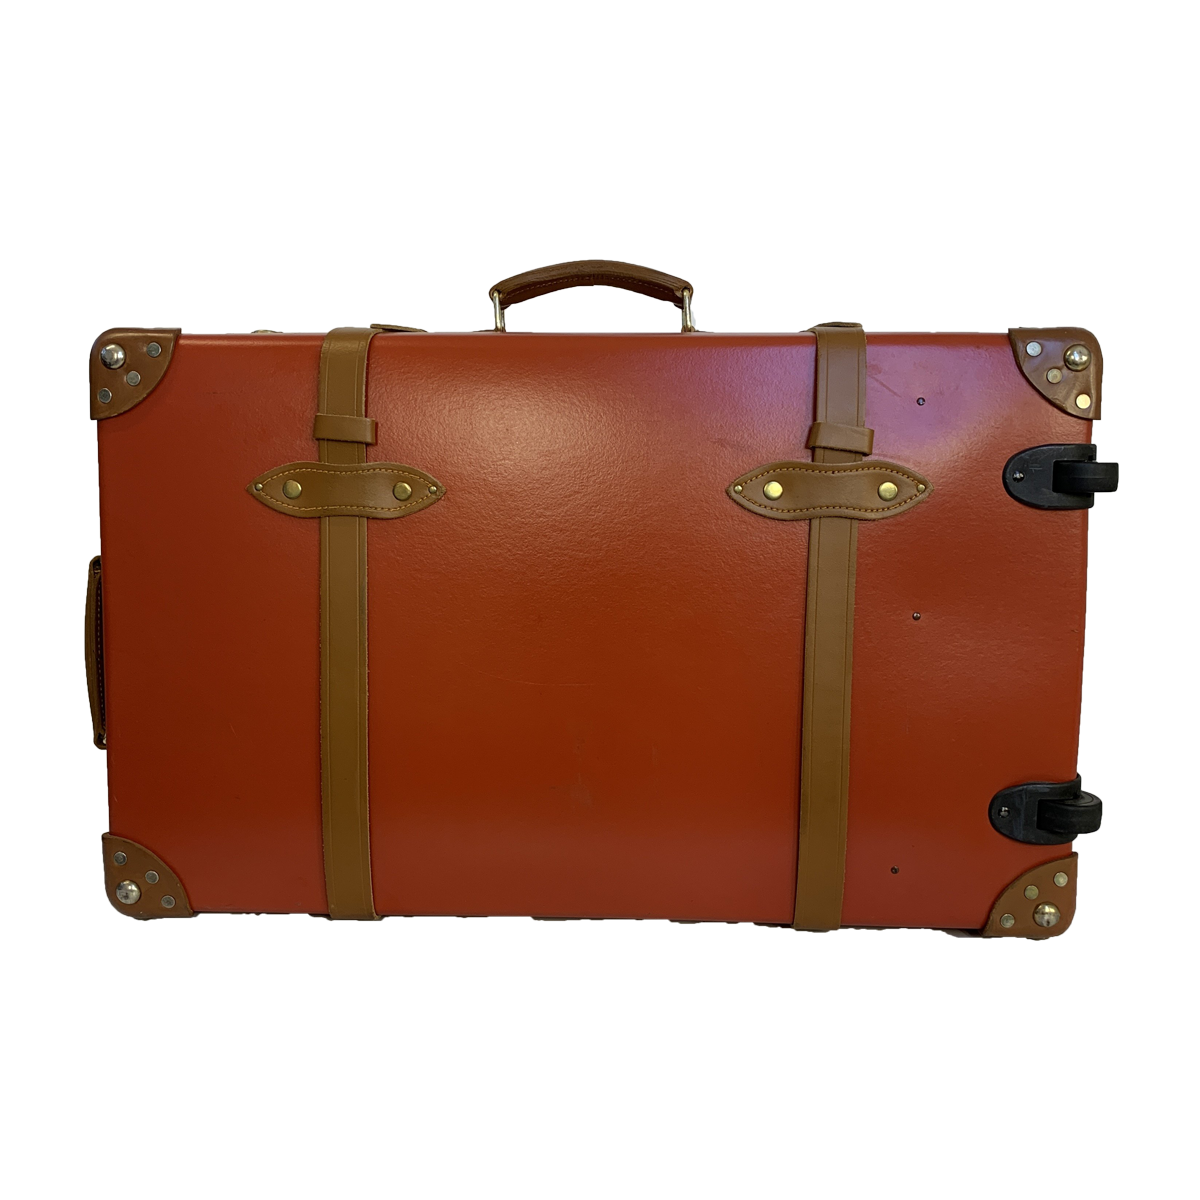 Globetrotter-Globetrotter Koffer Leder-Globetrotter Handtasche-Vintage Globetrotter Etoile Luxury Vintage Amsterdam